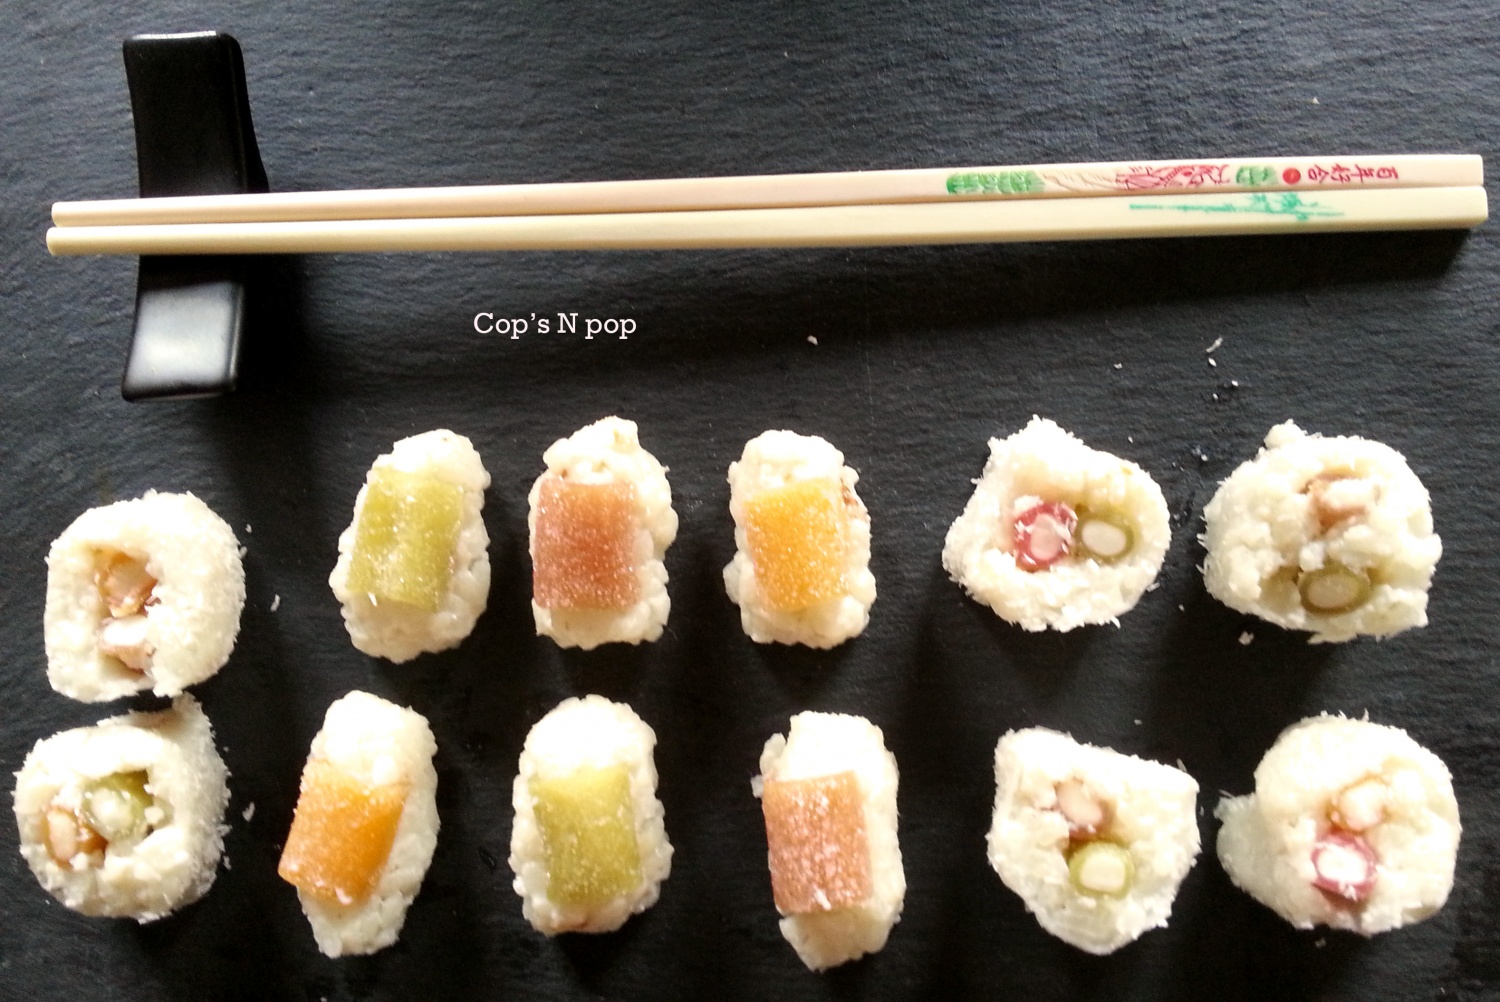 Recettes de Sushi et Bonbons